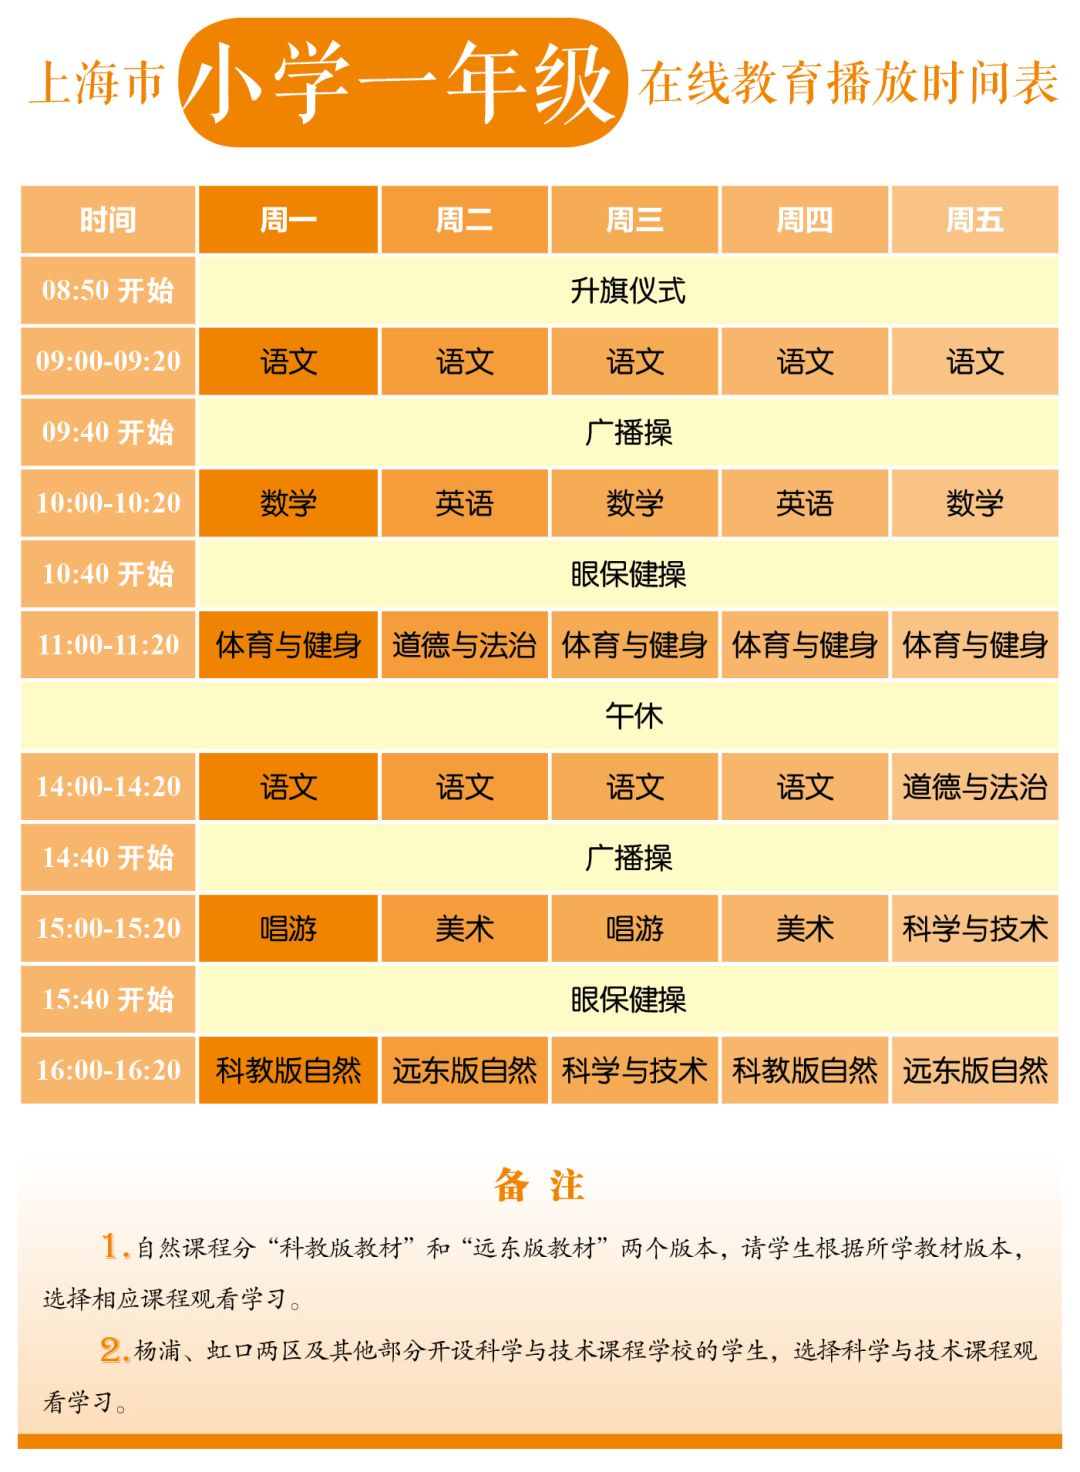 上海市中小学各年级在线教育时间表发布